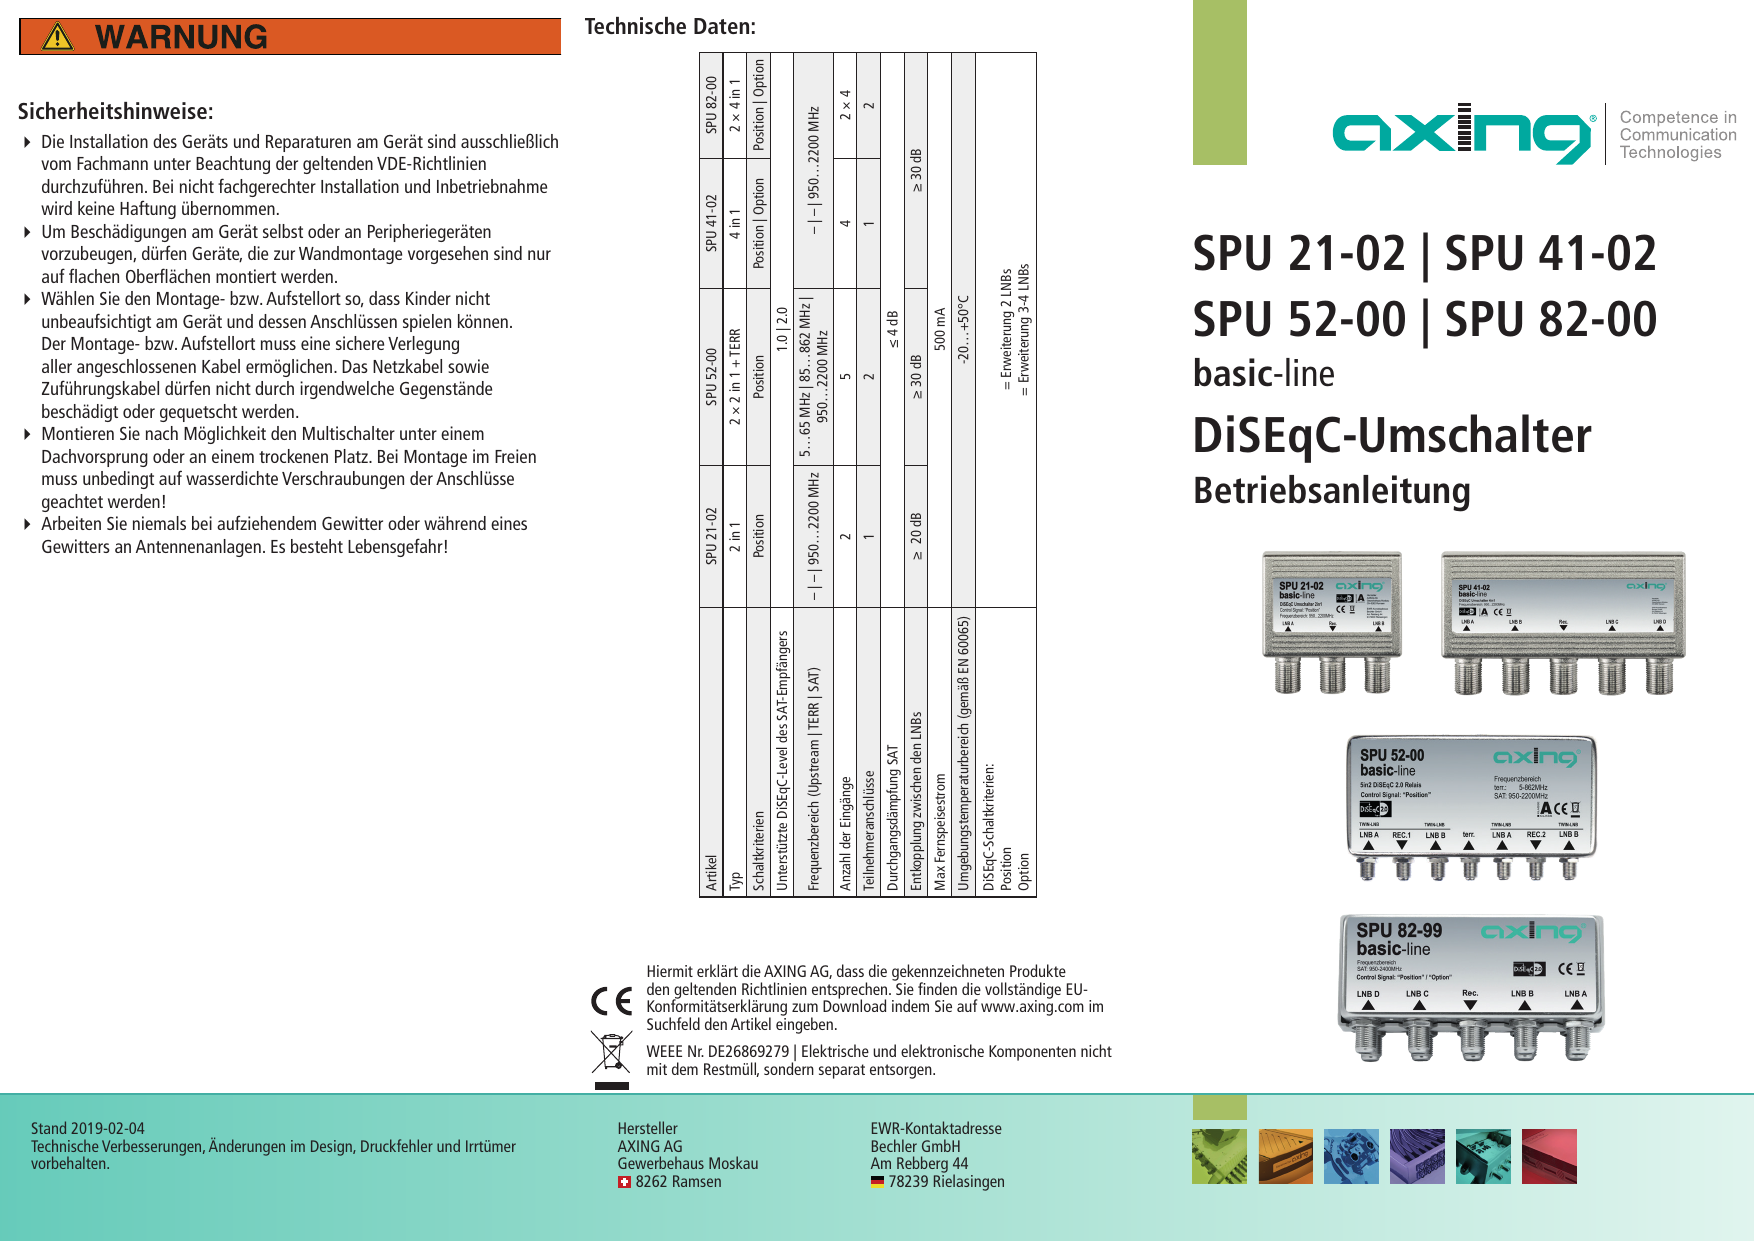 axing SPU 41-02 basic-line 4 in 1 DiSEqC 2.0 Umschalter im Wetterschutzgehäuse 